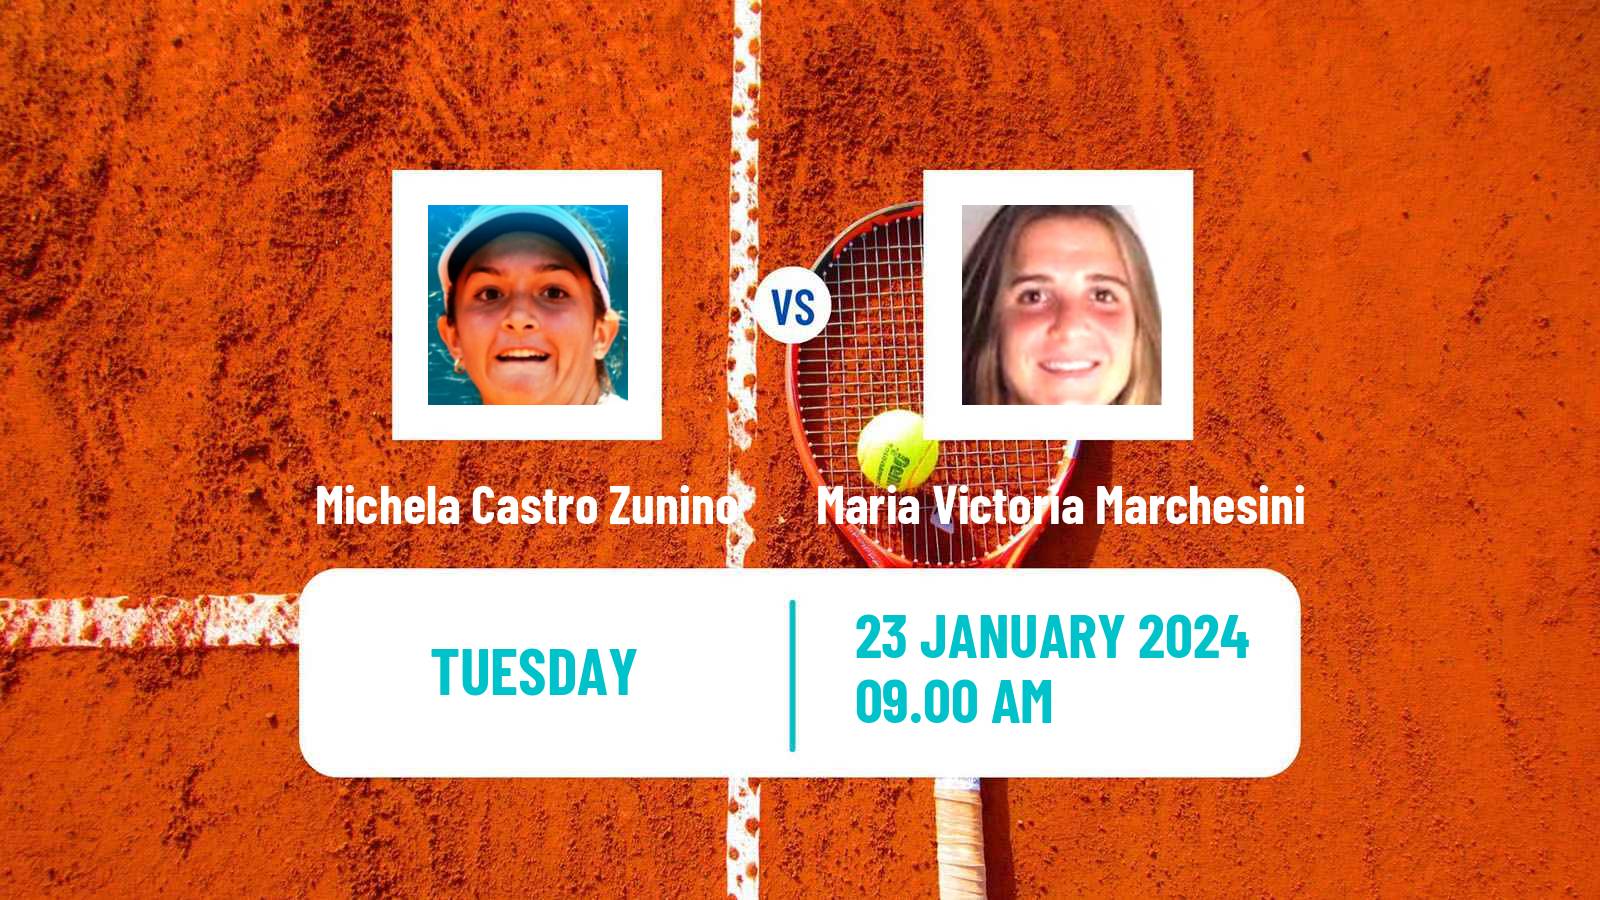 Tennis ITF W35 Buenos Aires 2 Women Michela Castro Zunino - Maria Victoria Marchesini